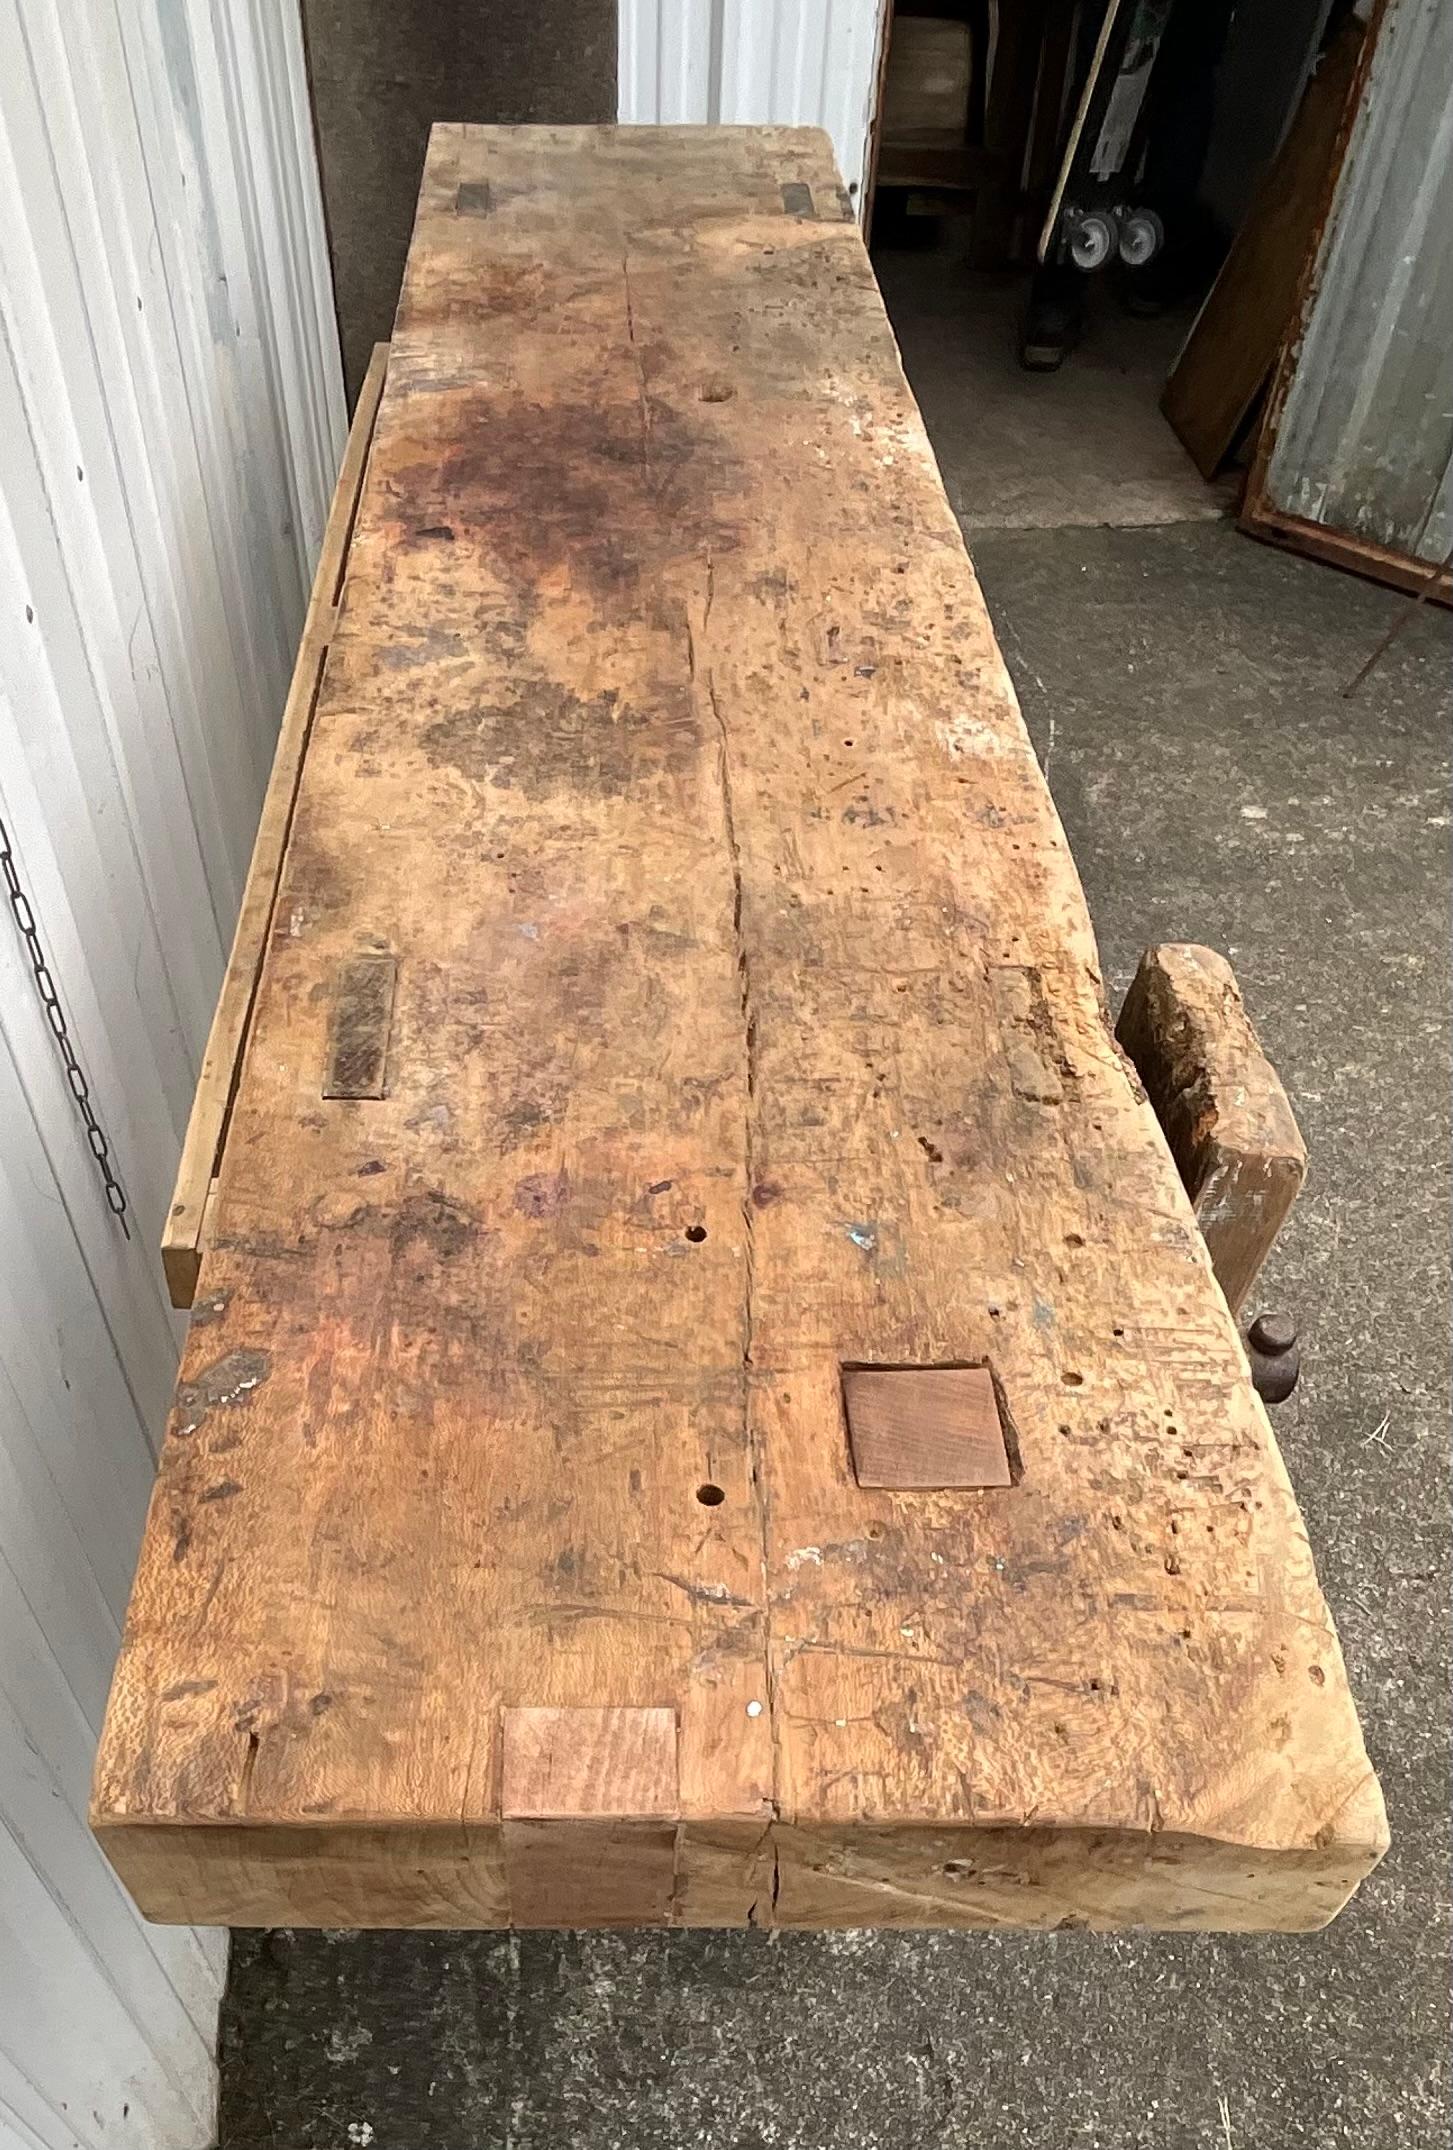 Cet établi est une véritable table de travail pour l'artisan comme pour l'ébéniste. 

La base, composée de quatre pieds, est en chêne. La partie supérieure est un bois de platane épais. Cette table est complétée par une presse et un